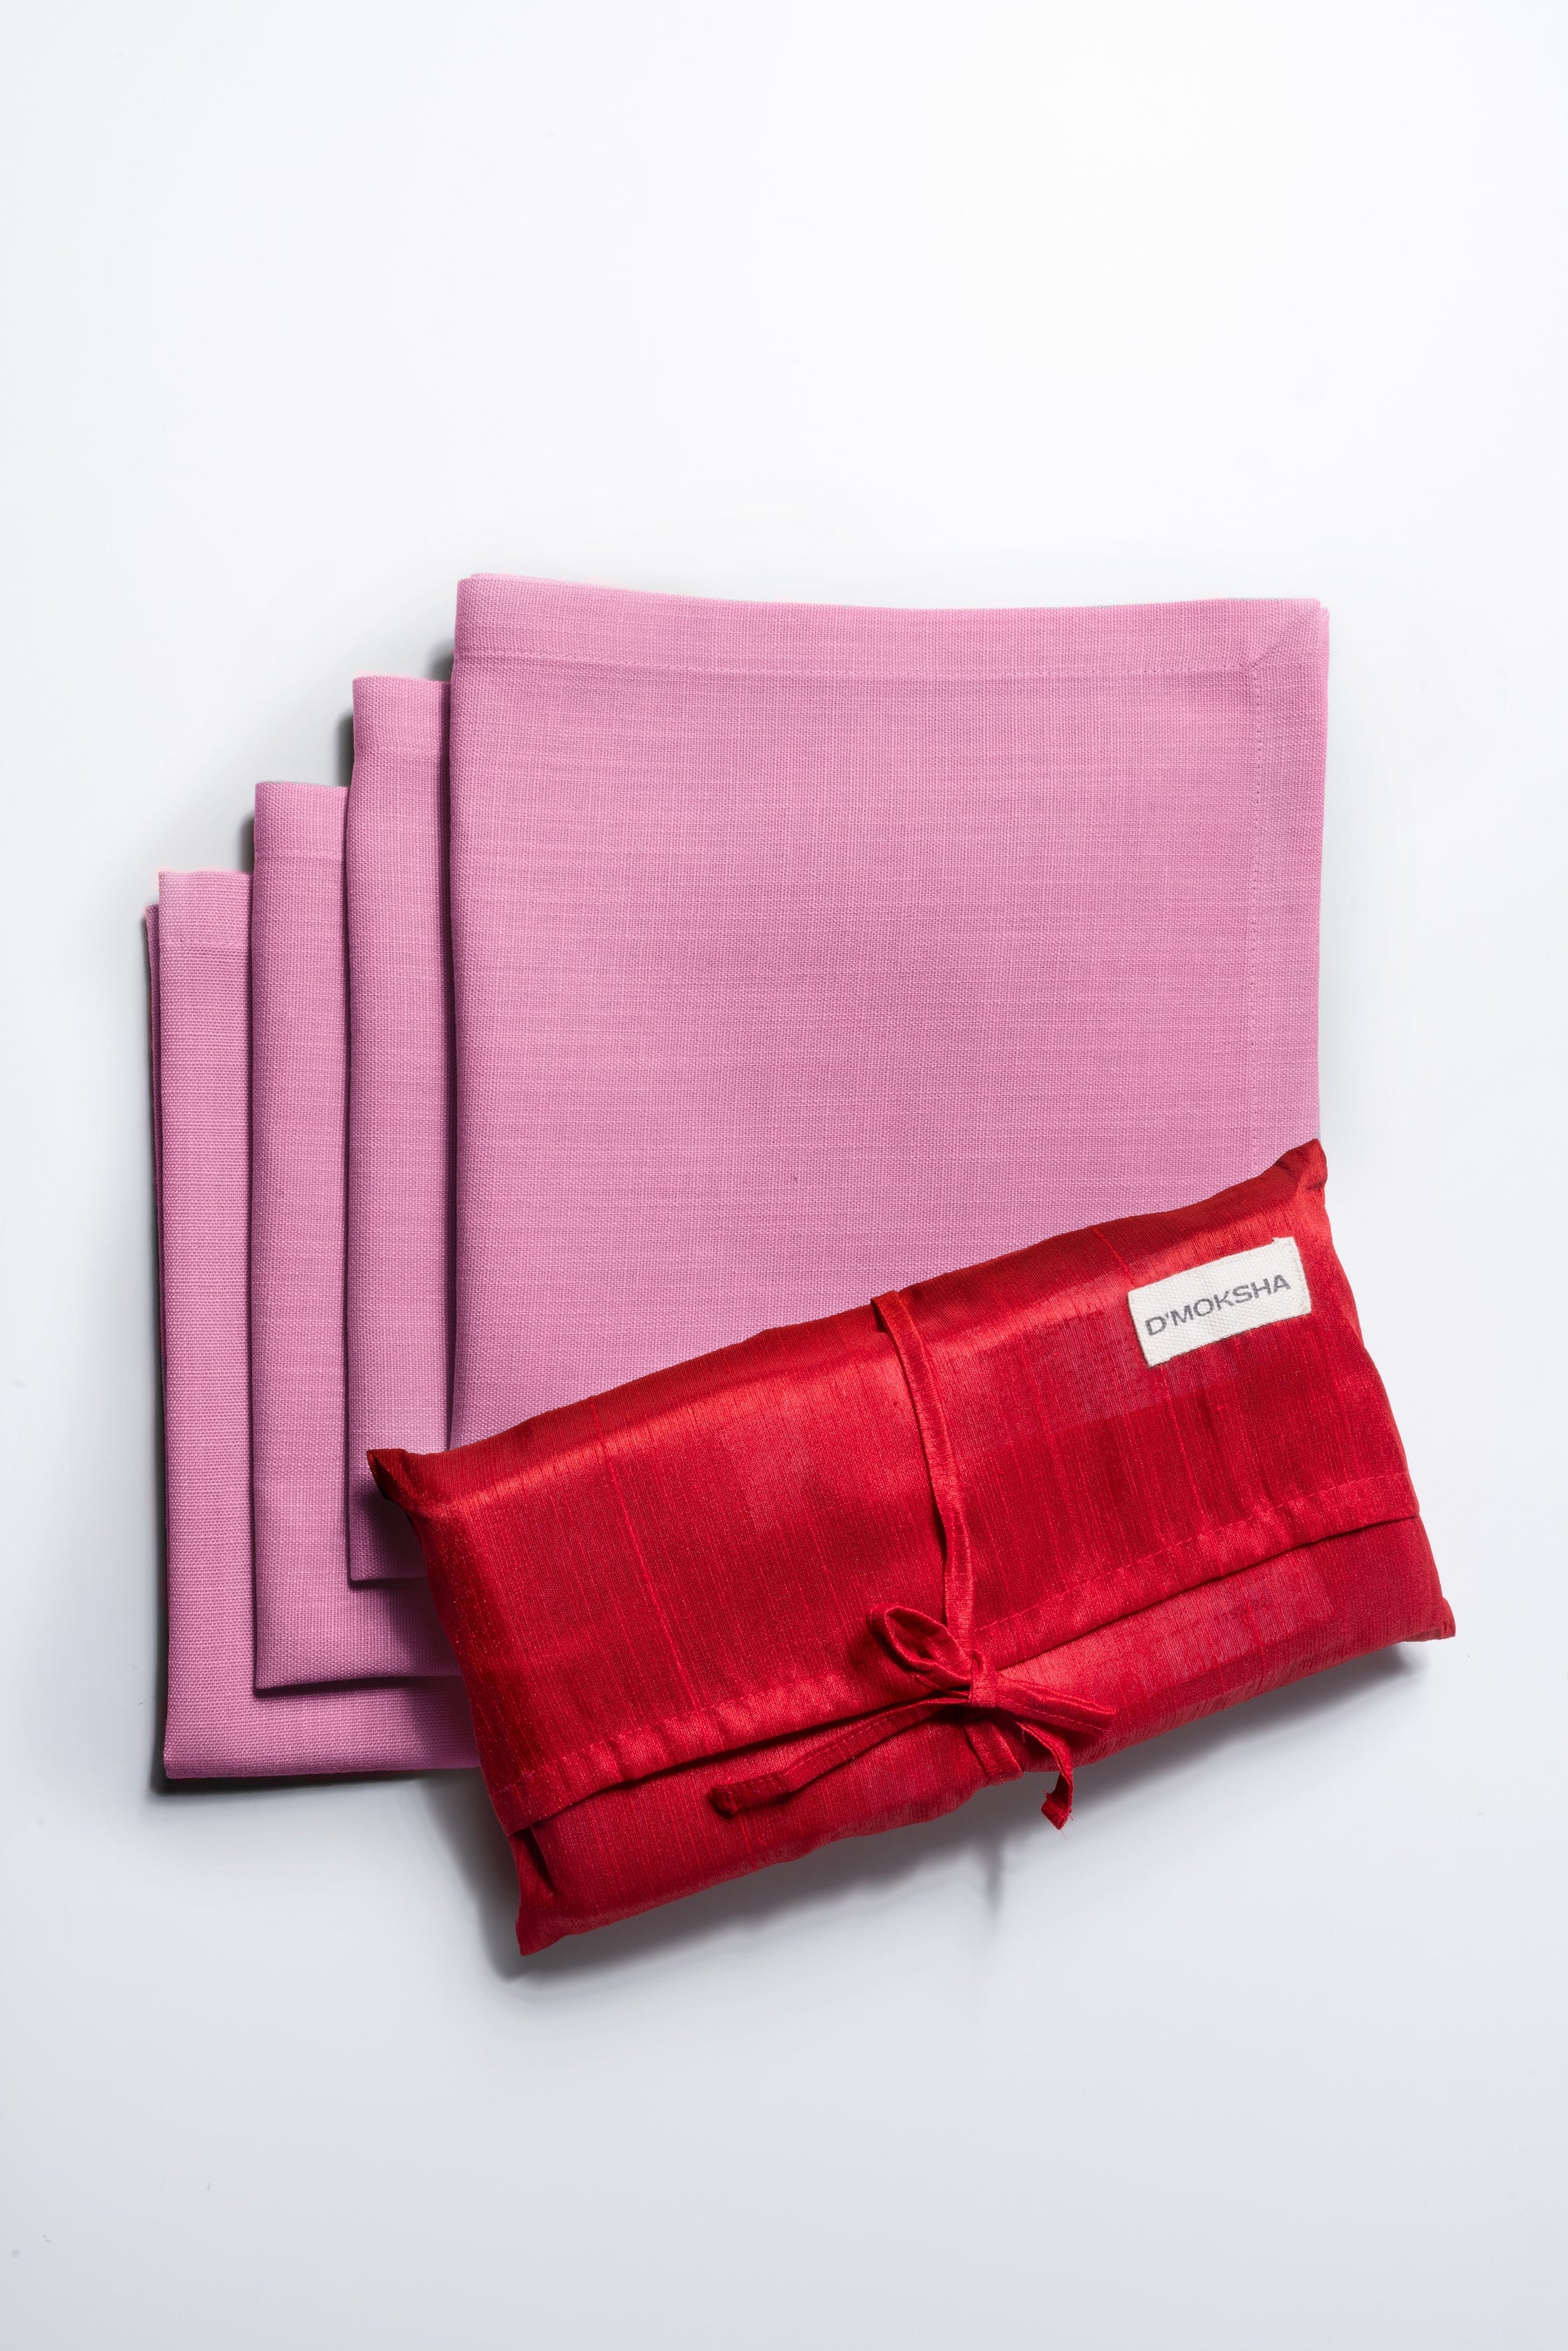 Bubblegum Pink Linen Textured Dinner Napkins 20 x 20 Inch Set of 4 - Mitered Corner